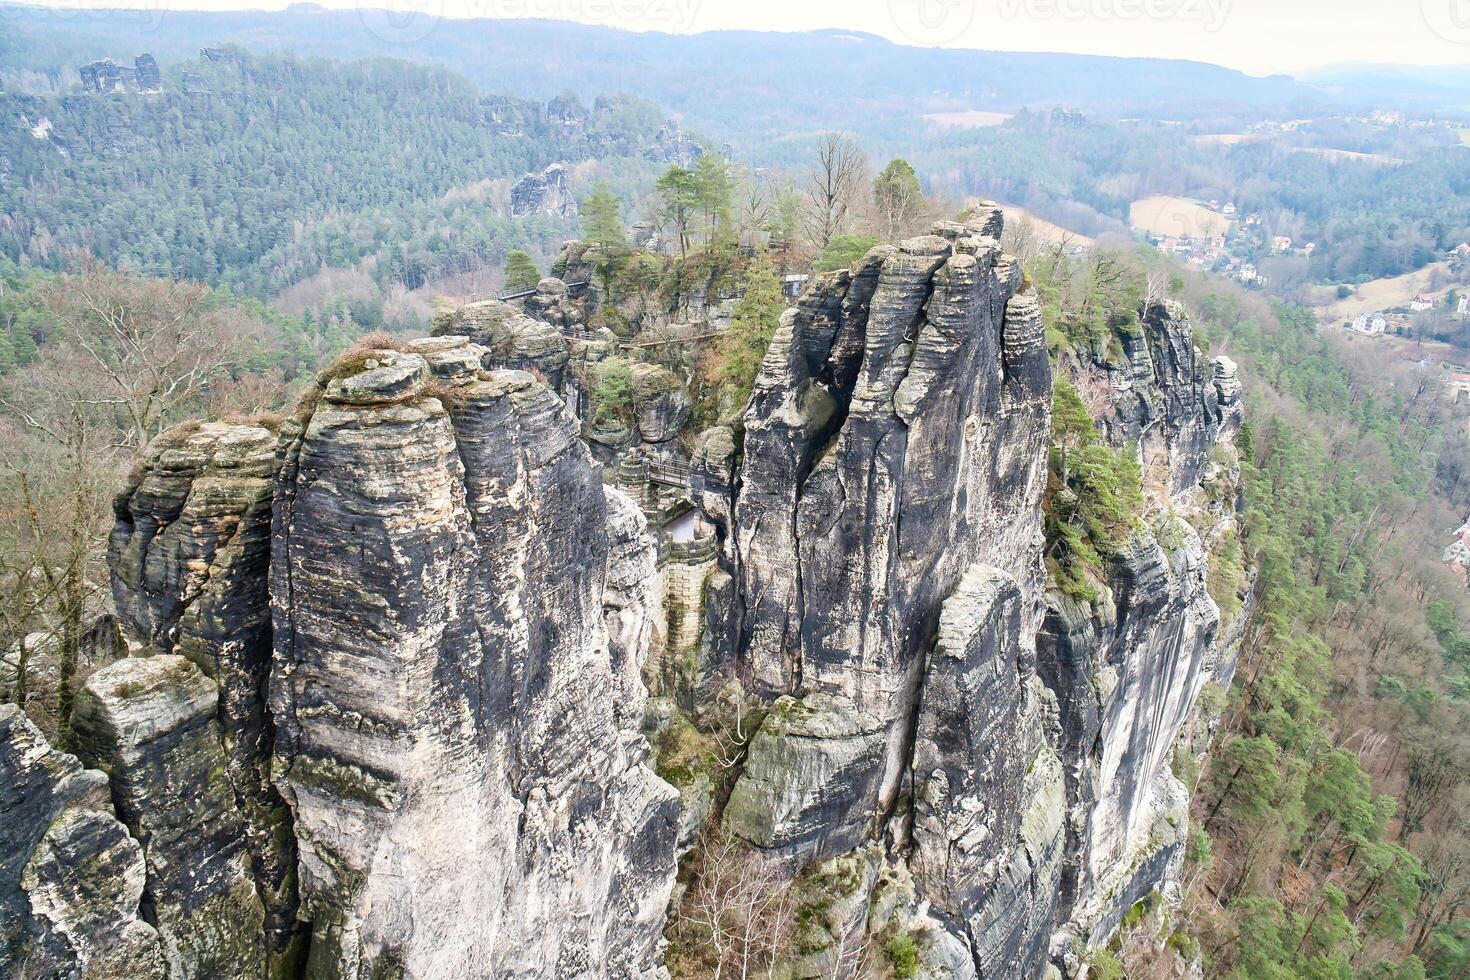 gekarteld rotsen Bij de basteibrug. breed visie over- bomen en bergen. dramatisch lucht foto